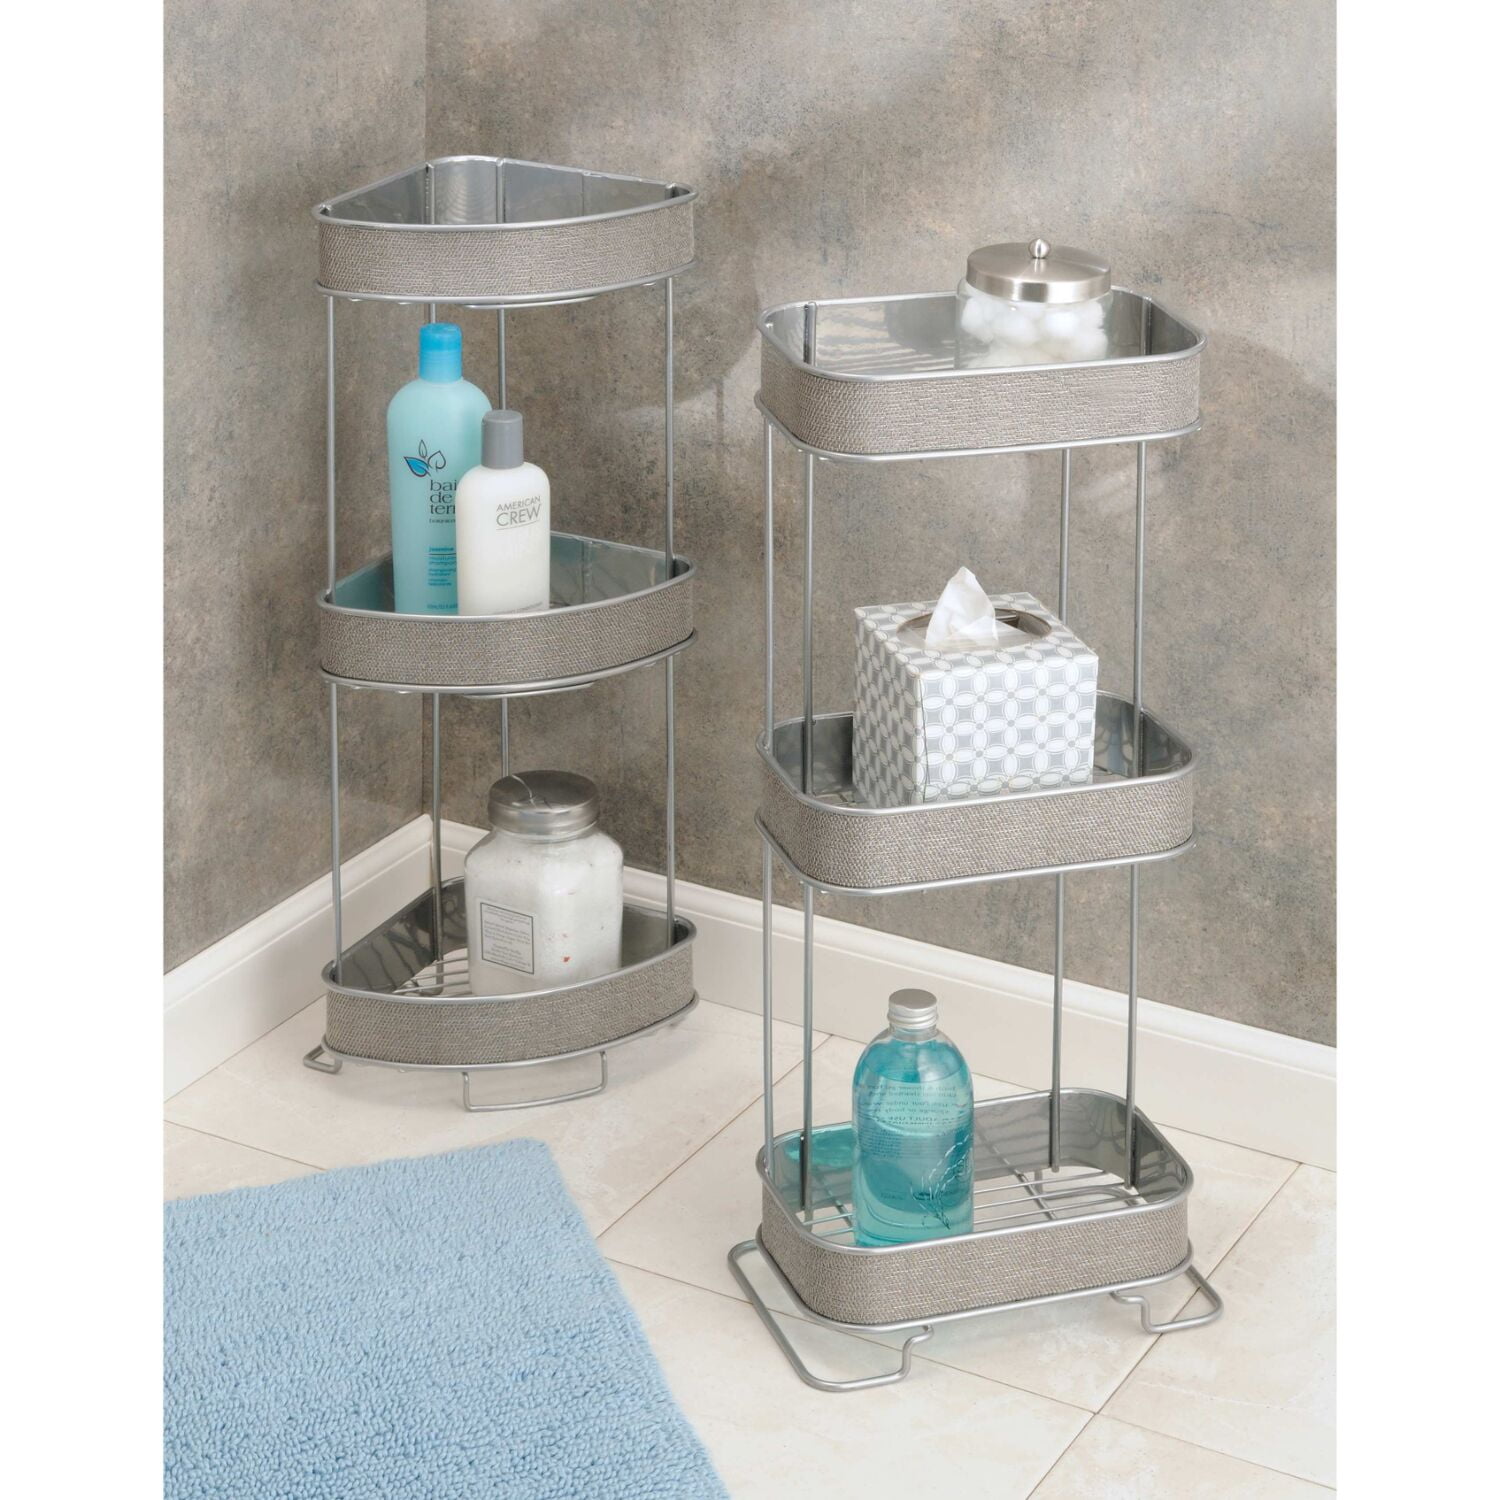 New 3-Tier Adjustable Corner Shelf Stand Bathroom Shower Caddy Storage  Organizer #HOMEZONE